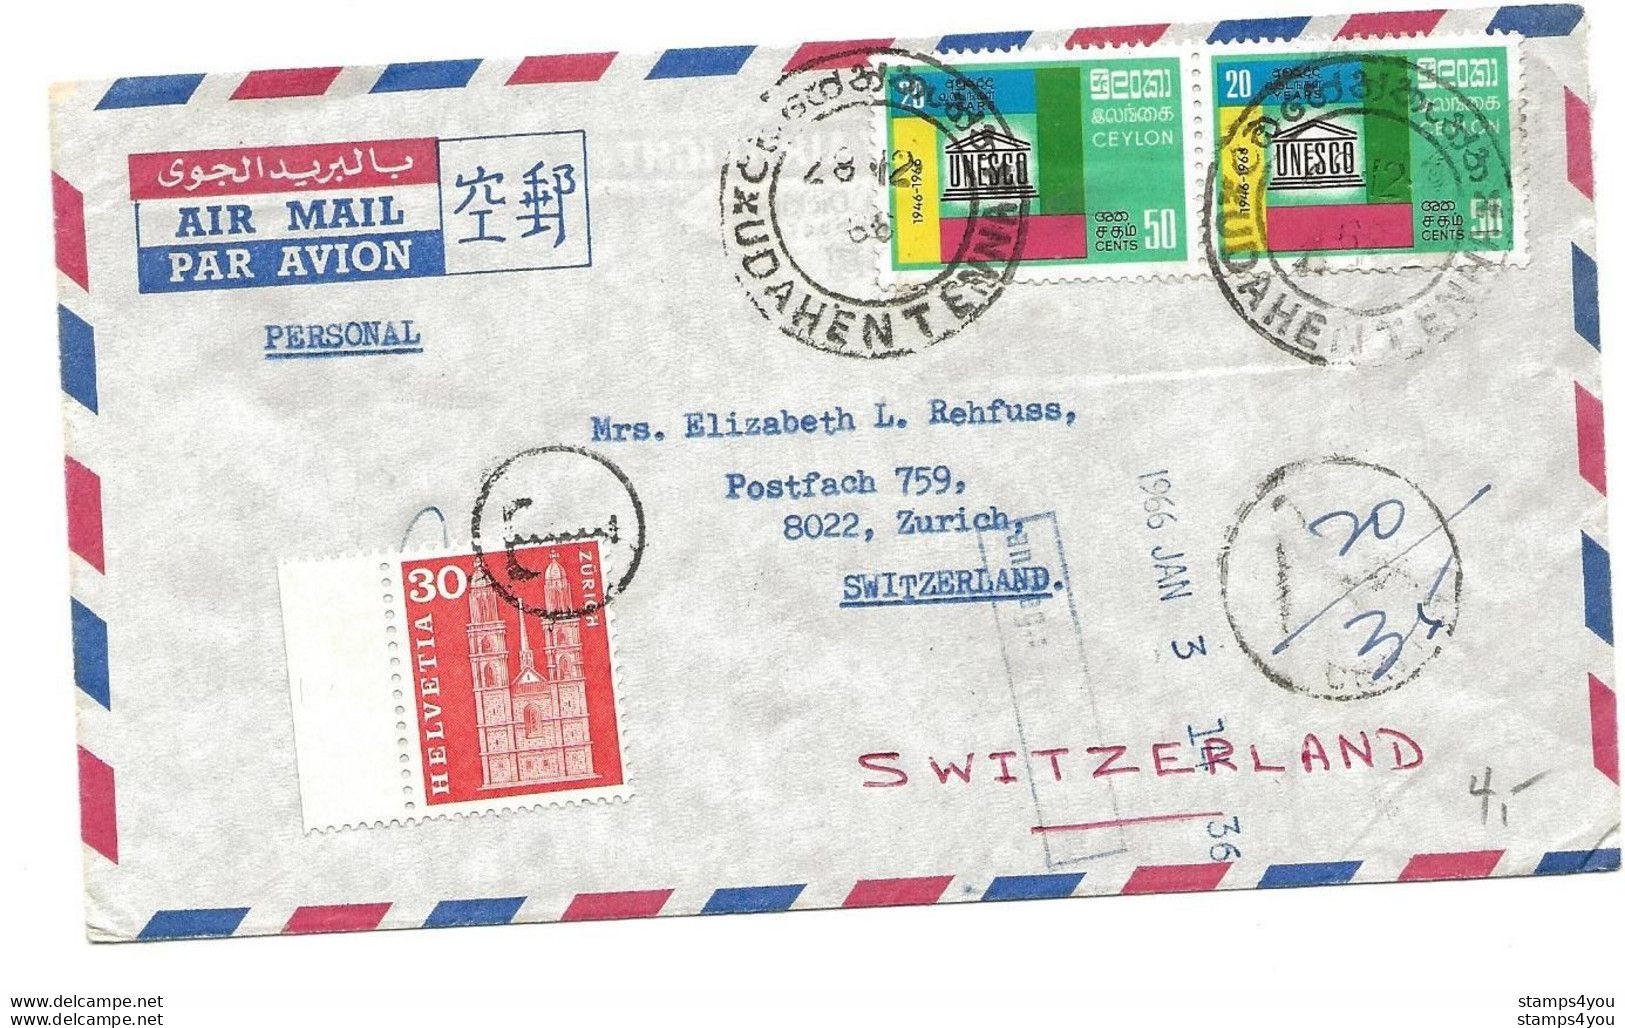 104 - 69 - Enveloppe Envoyée De Ceylon En Suisse - Timbre Suisse Avec Cachet "T" Taxe 1966 - Strafportzegels